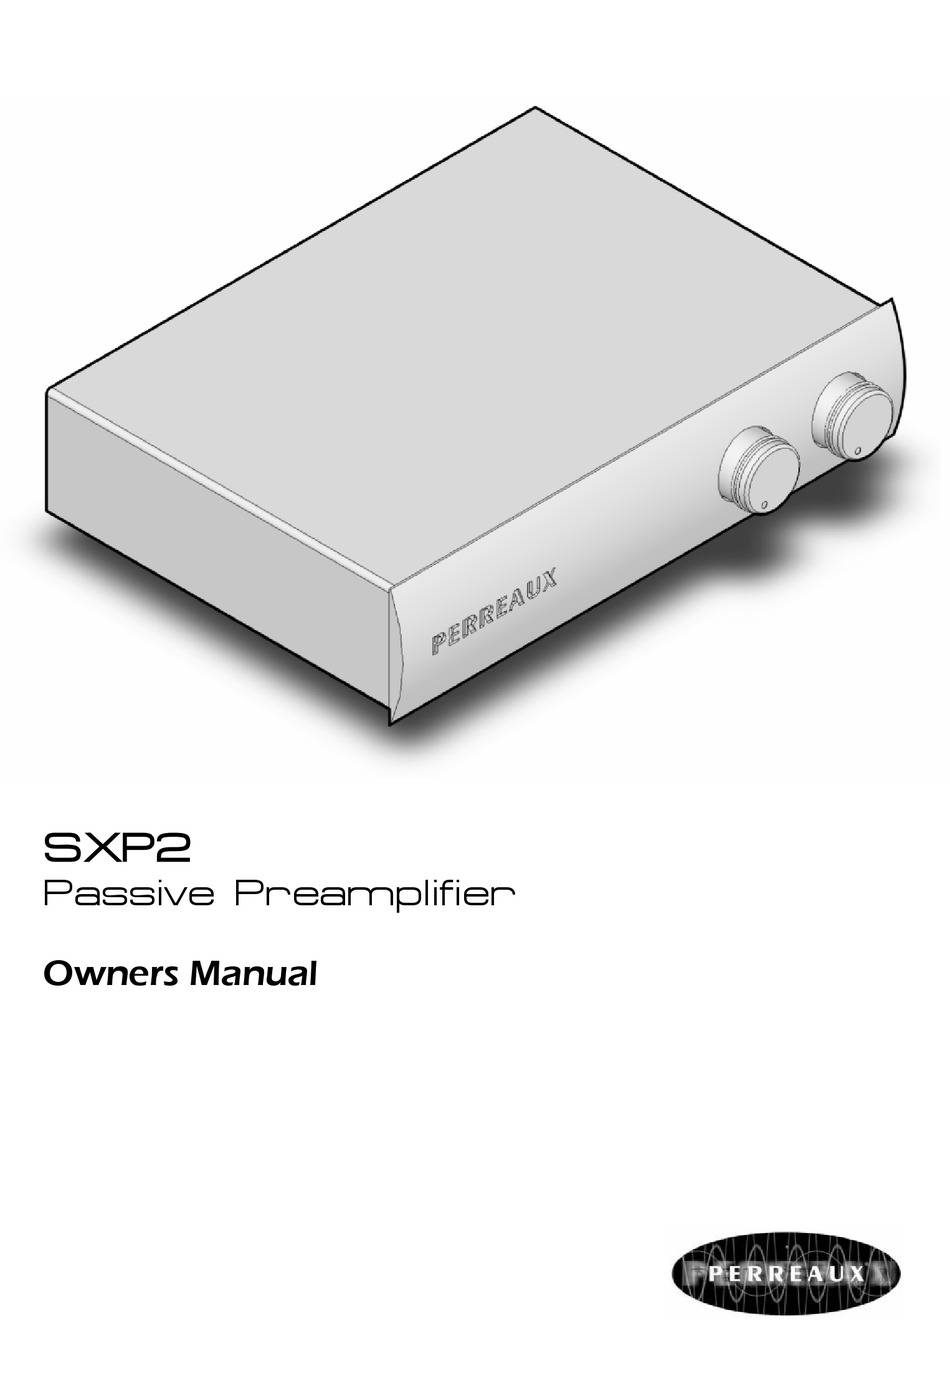 Perreaux Industries Silhouette SXP2